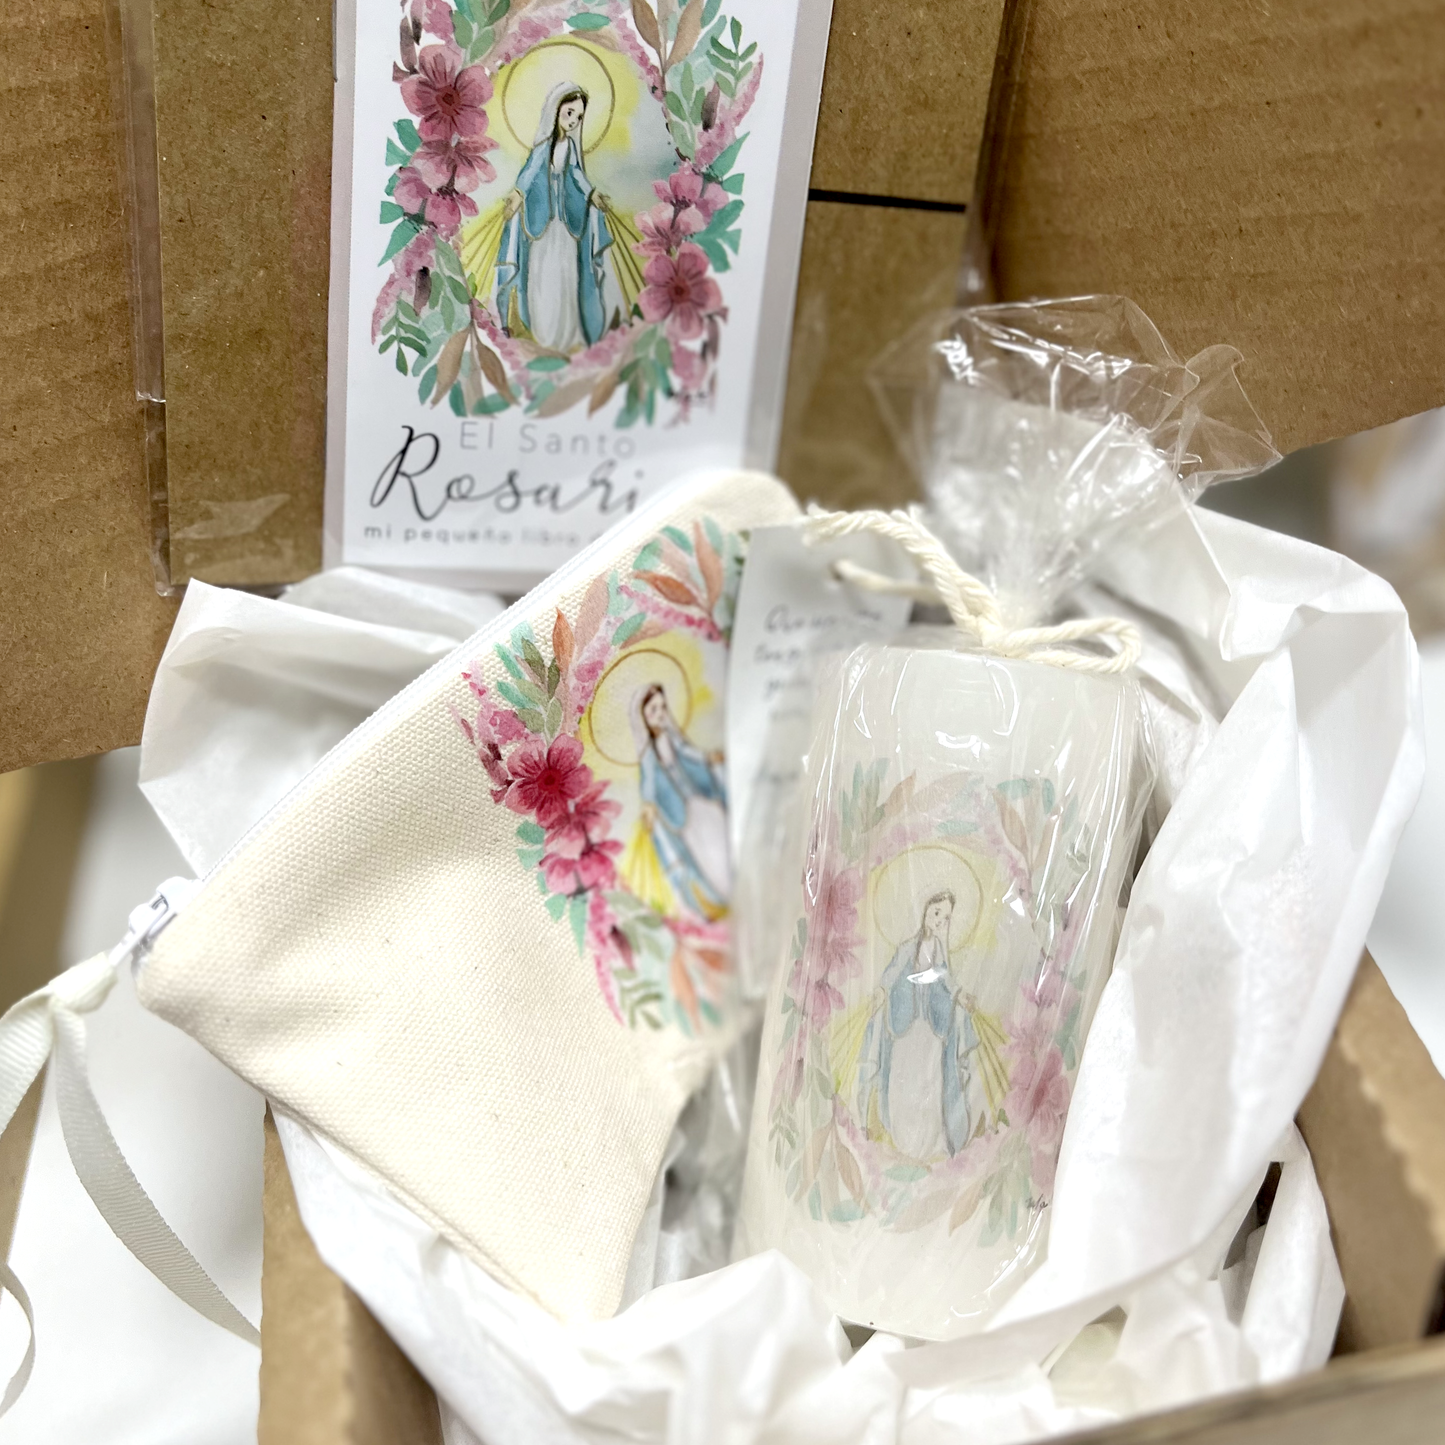 Cajita de Fe Rosas a María - Edición Limitada - Gift Box